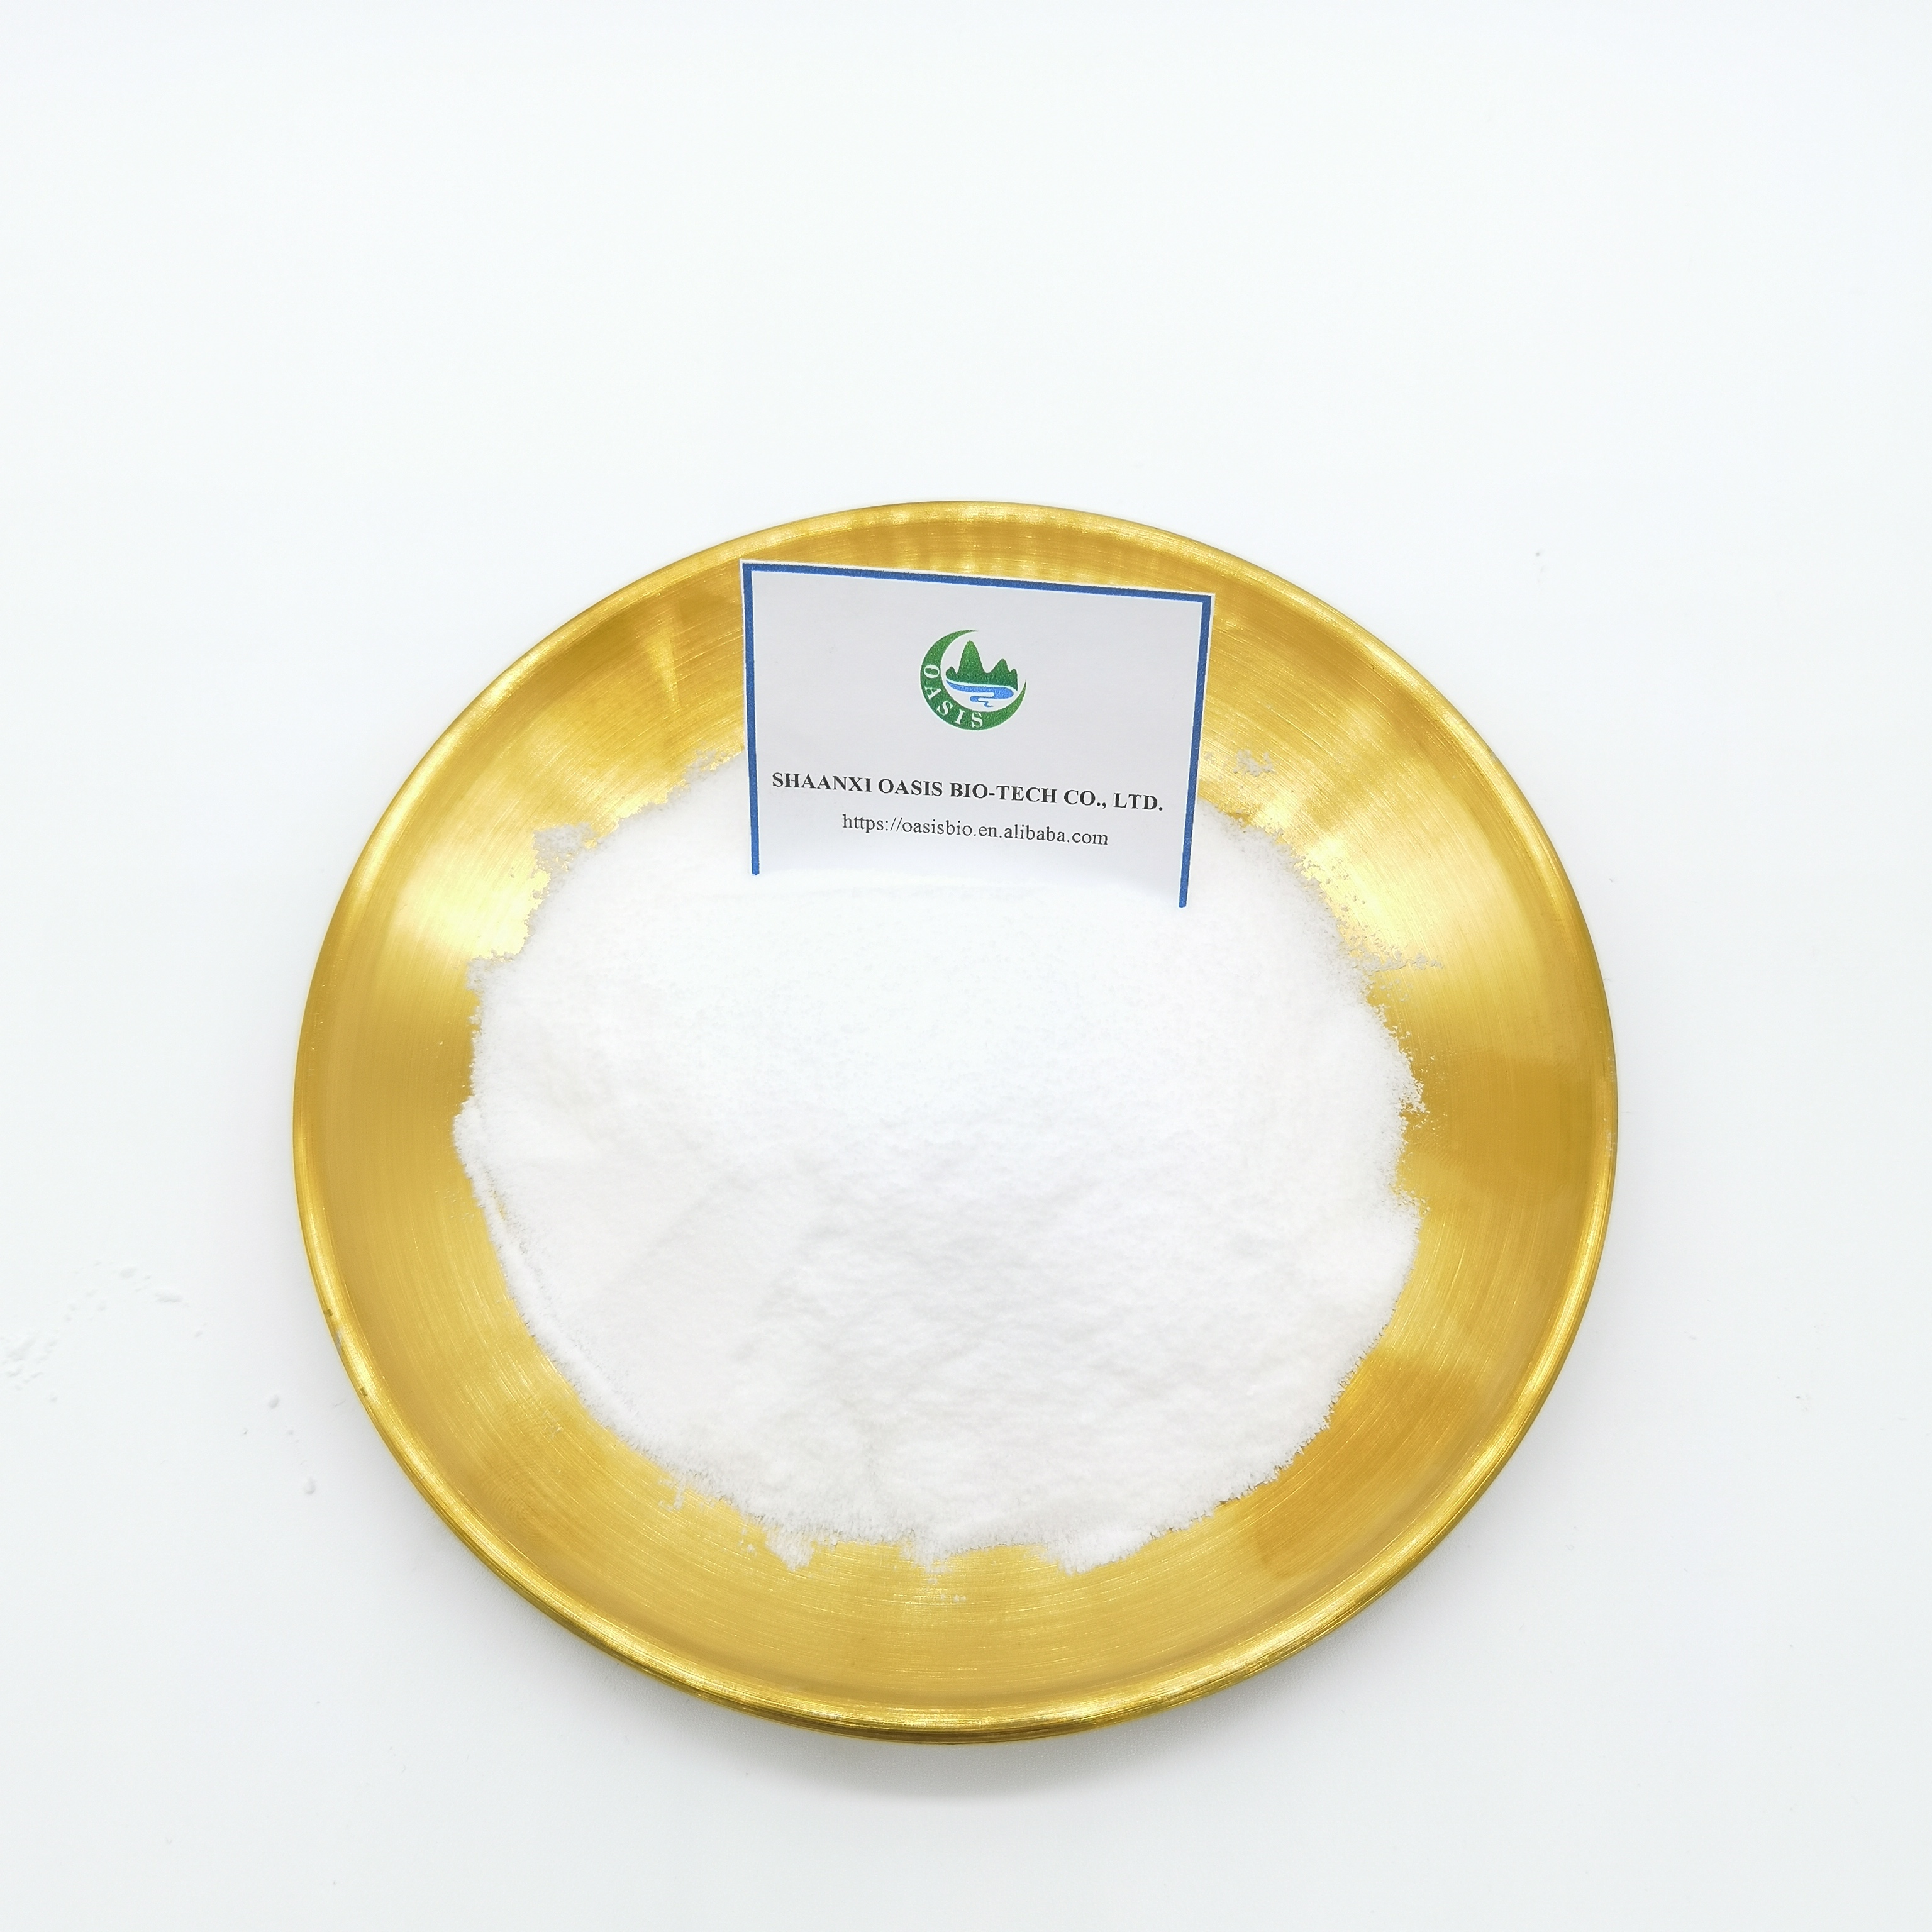 工場供給CAS 26787-78-0アモキシシリン原料の粉